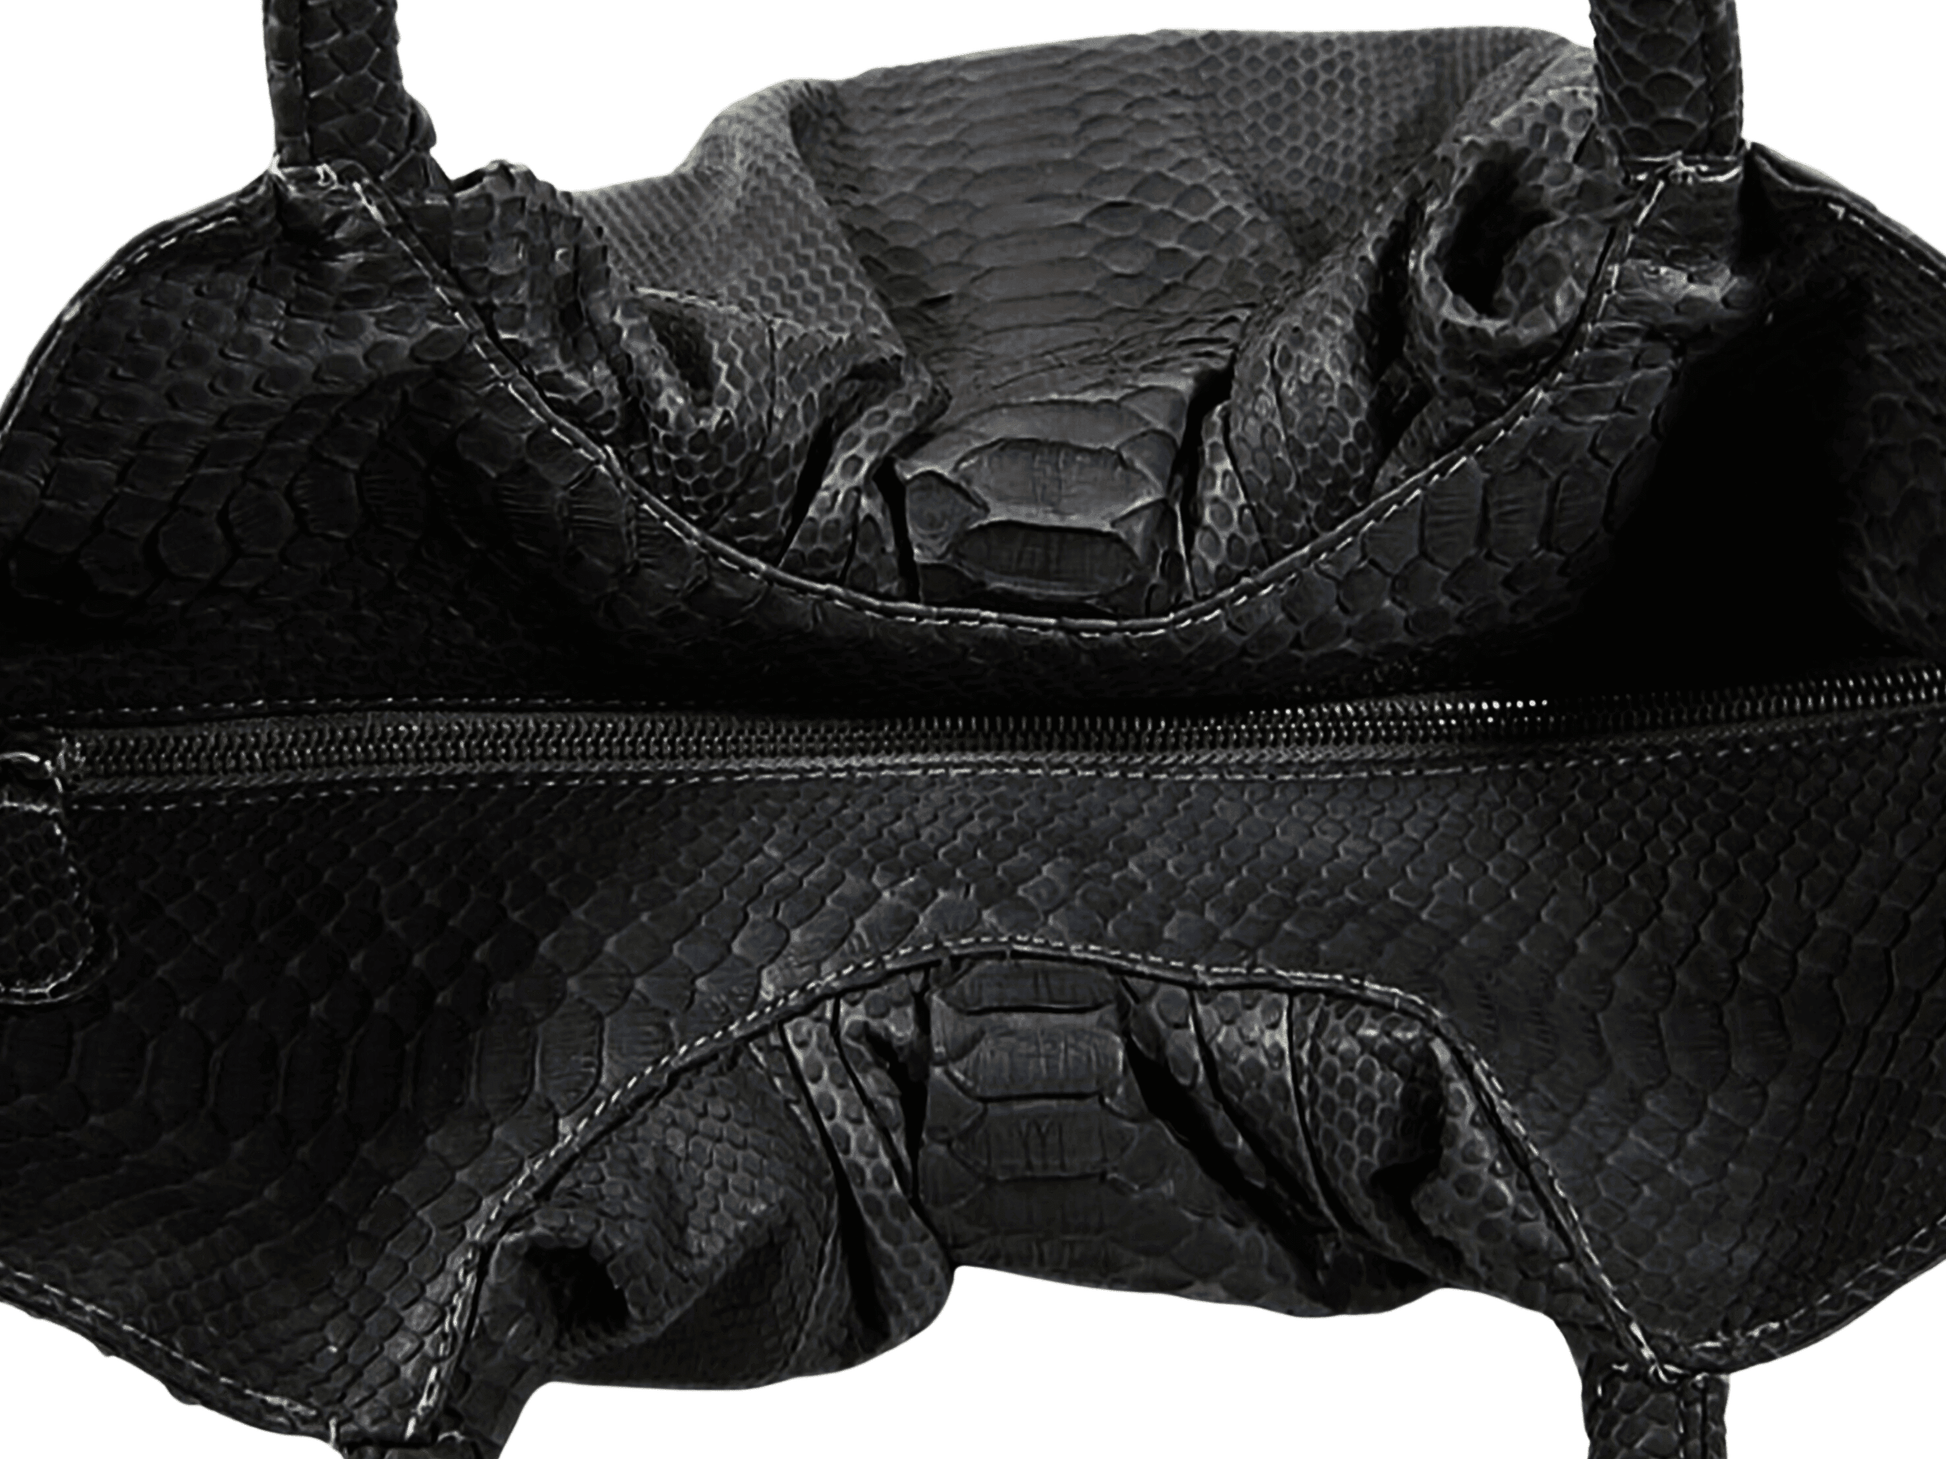 Snakeskin Hobo Floy Handbag Python Jacket by LFM Fashion